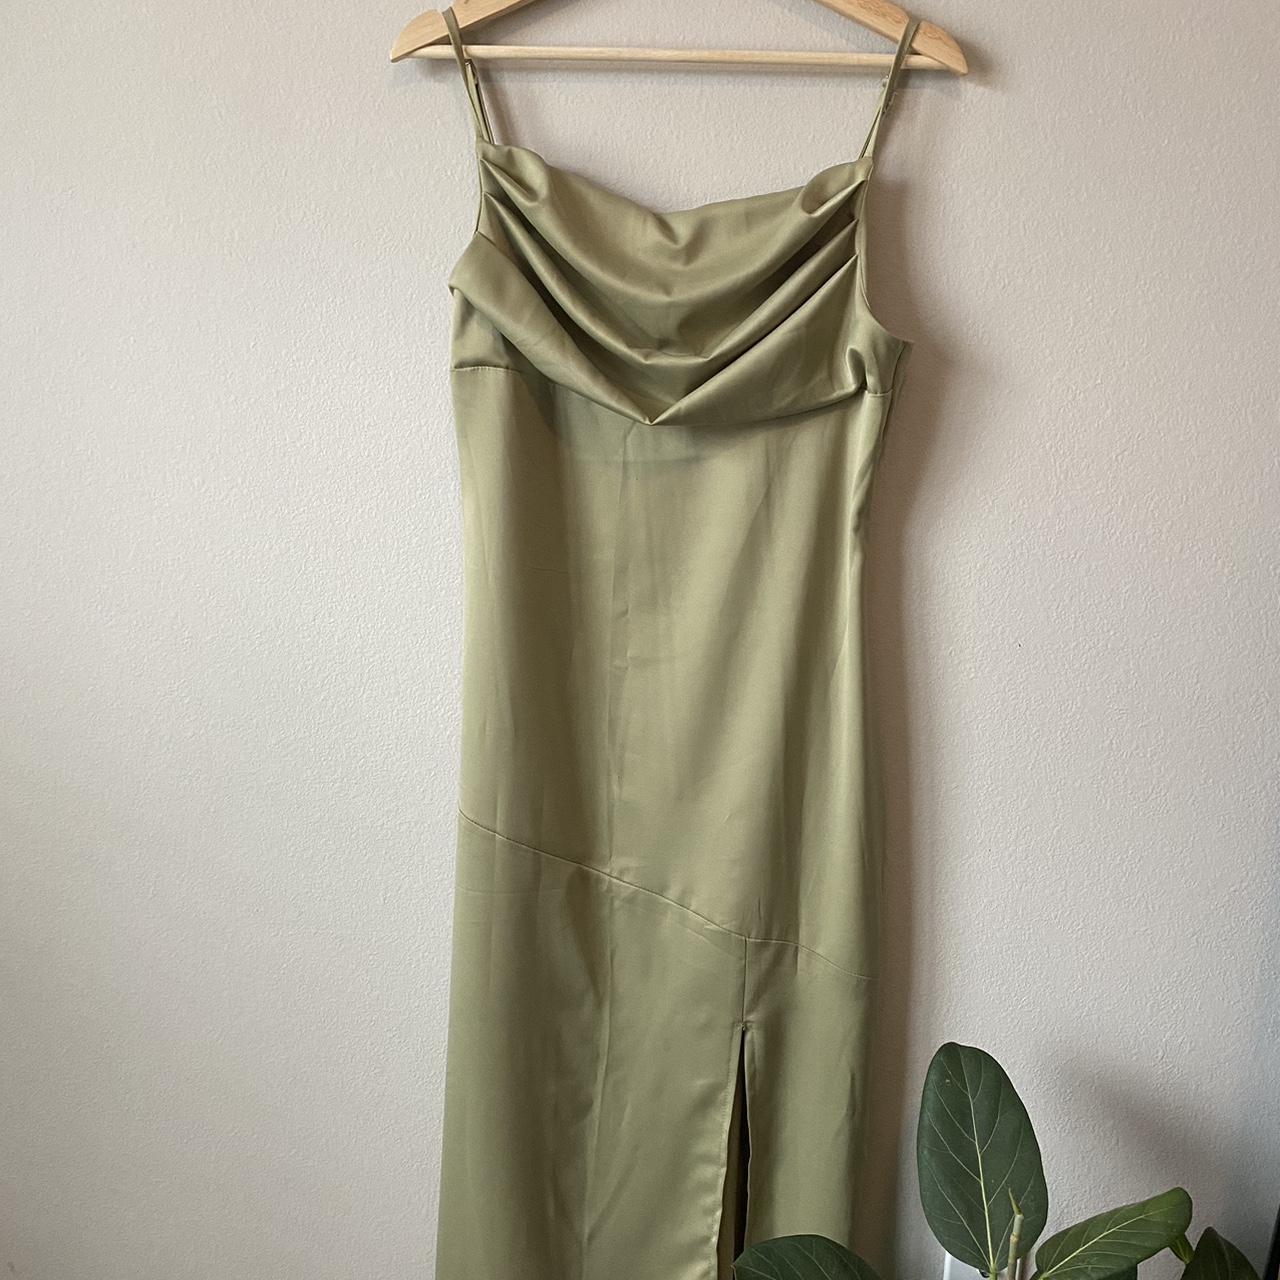 Silk Slip Dress Olive green color Super soft and... - Depop